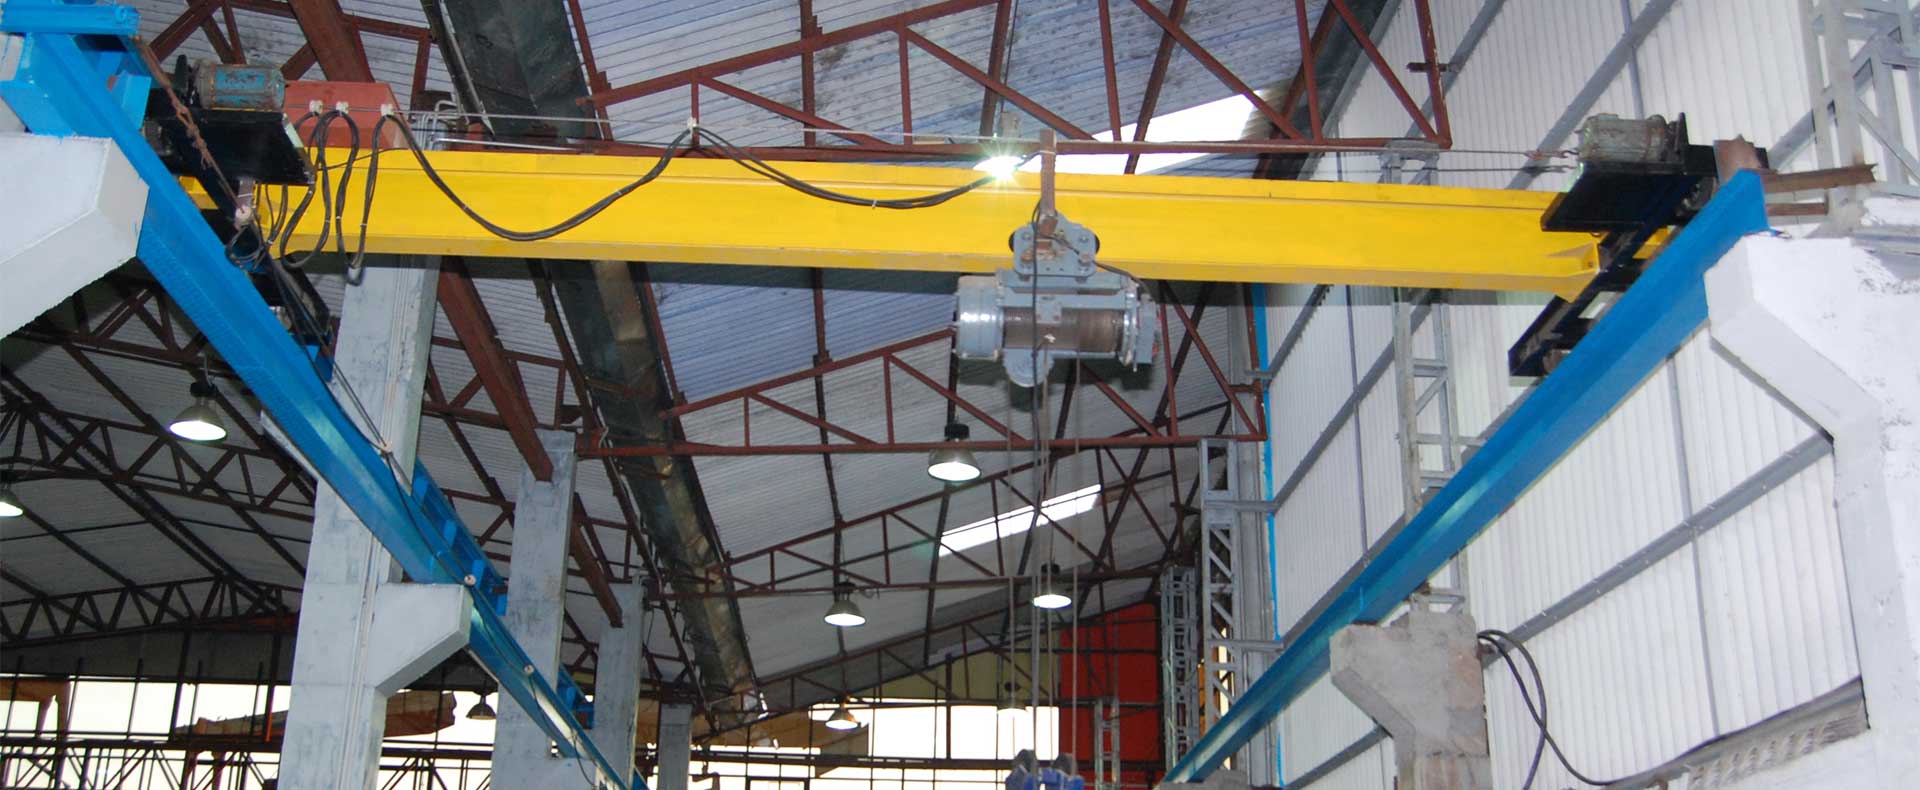 hoist-crane-eot-hot-crane-goods-lift-passenger-lift-material